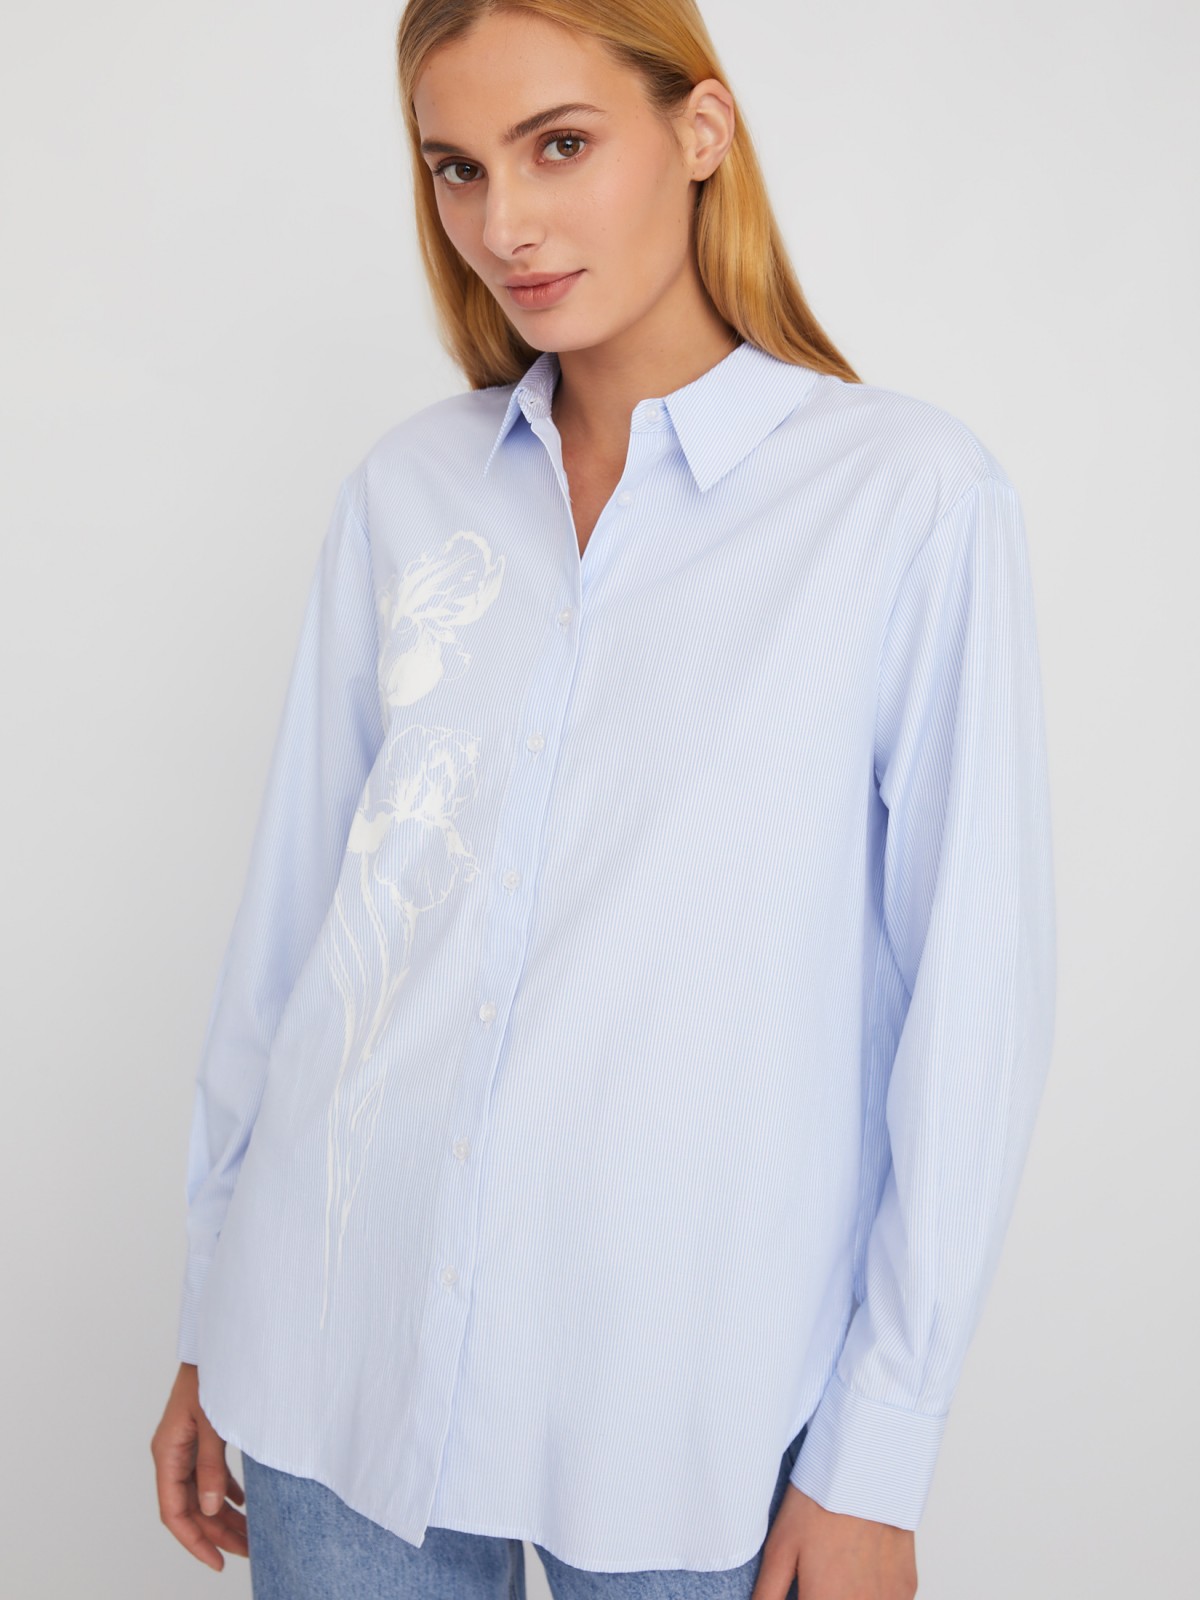 Рубашка удлинённого силуэта в полоску с принтом zolla 02411117Y303, цвет светло-голубой, размер XS - фото 1